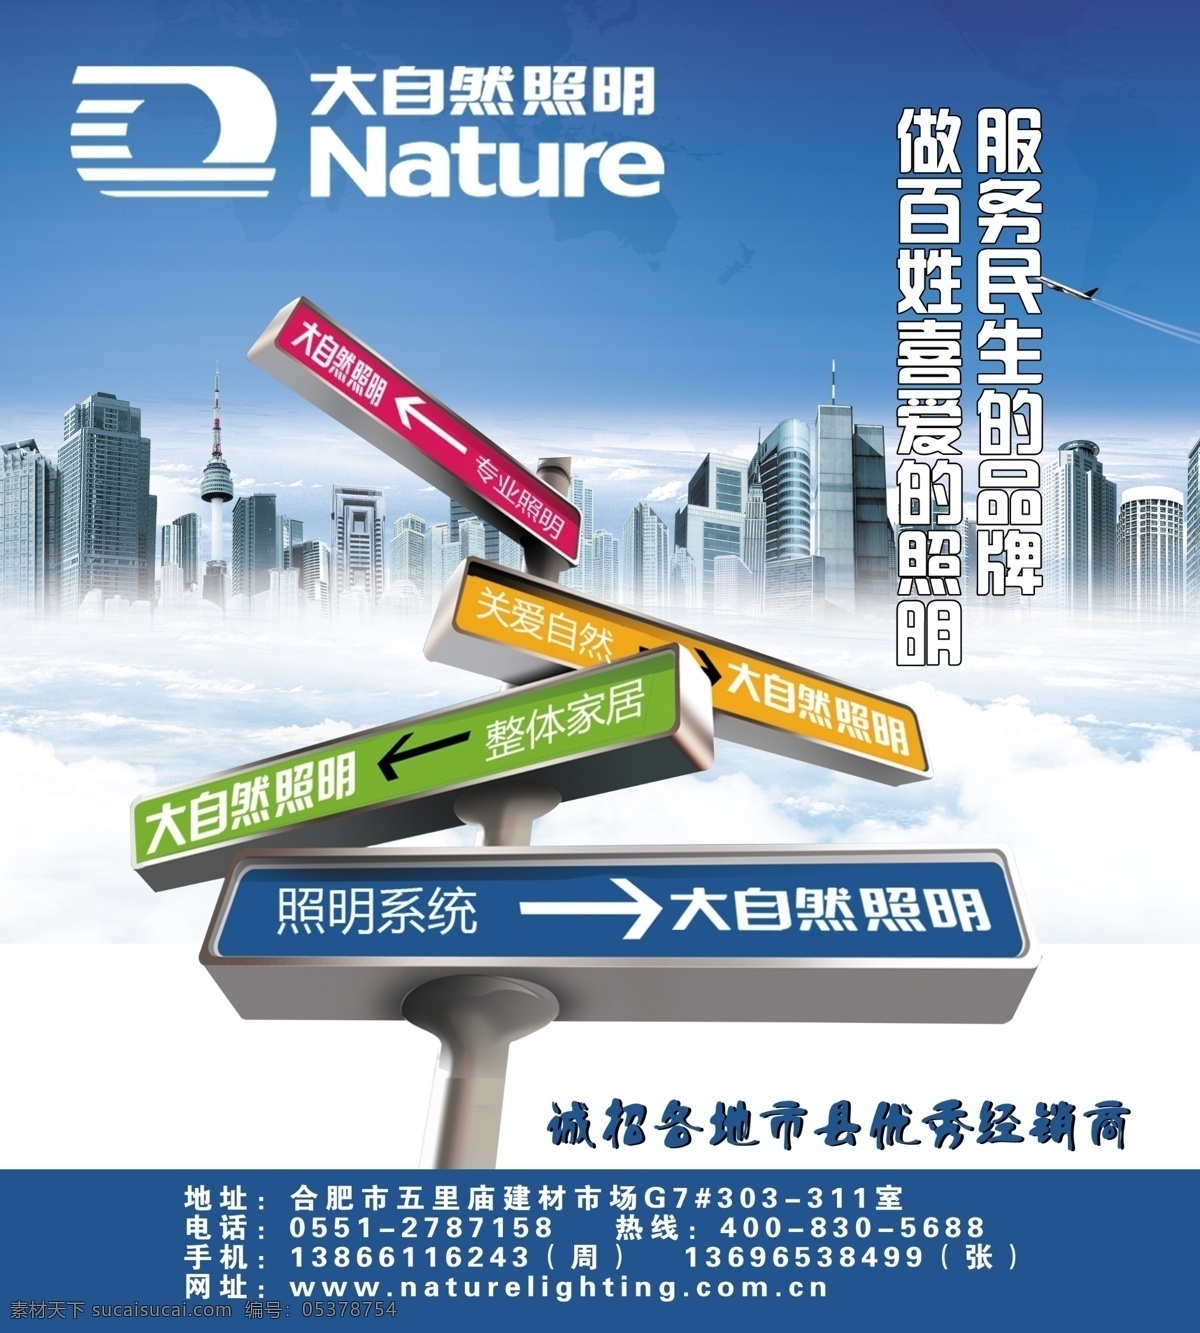 大自然 广告设计模板 建筑 路标 源文件 云朵 招商 模板下载 大自然照明 其他海报设计